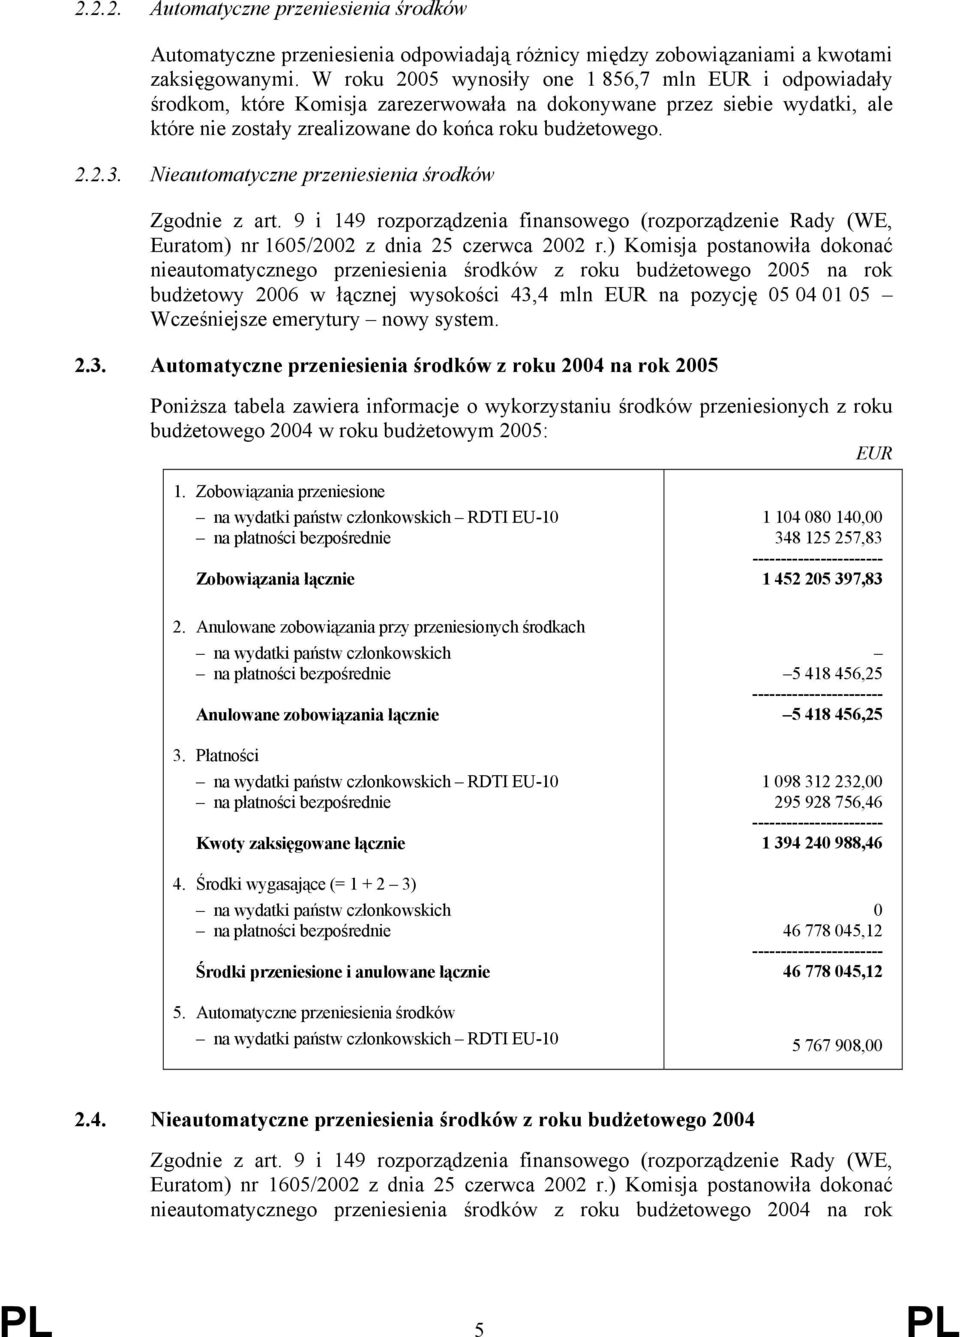 Nieautomatyczne przeniesienia środków Zgodnie z art. 9 i 149 rozporządzenia finansowego (rozporządzenie Rady (WE, Euratom) nr 1605/2002 z dnia 25 czerwca 2002 r.